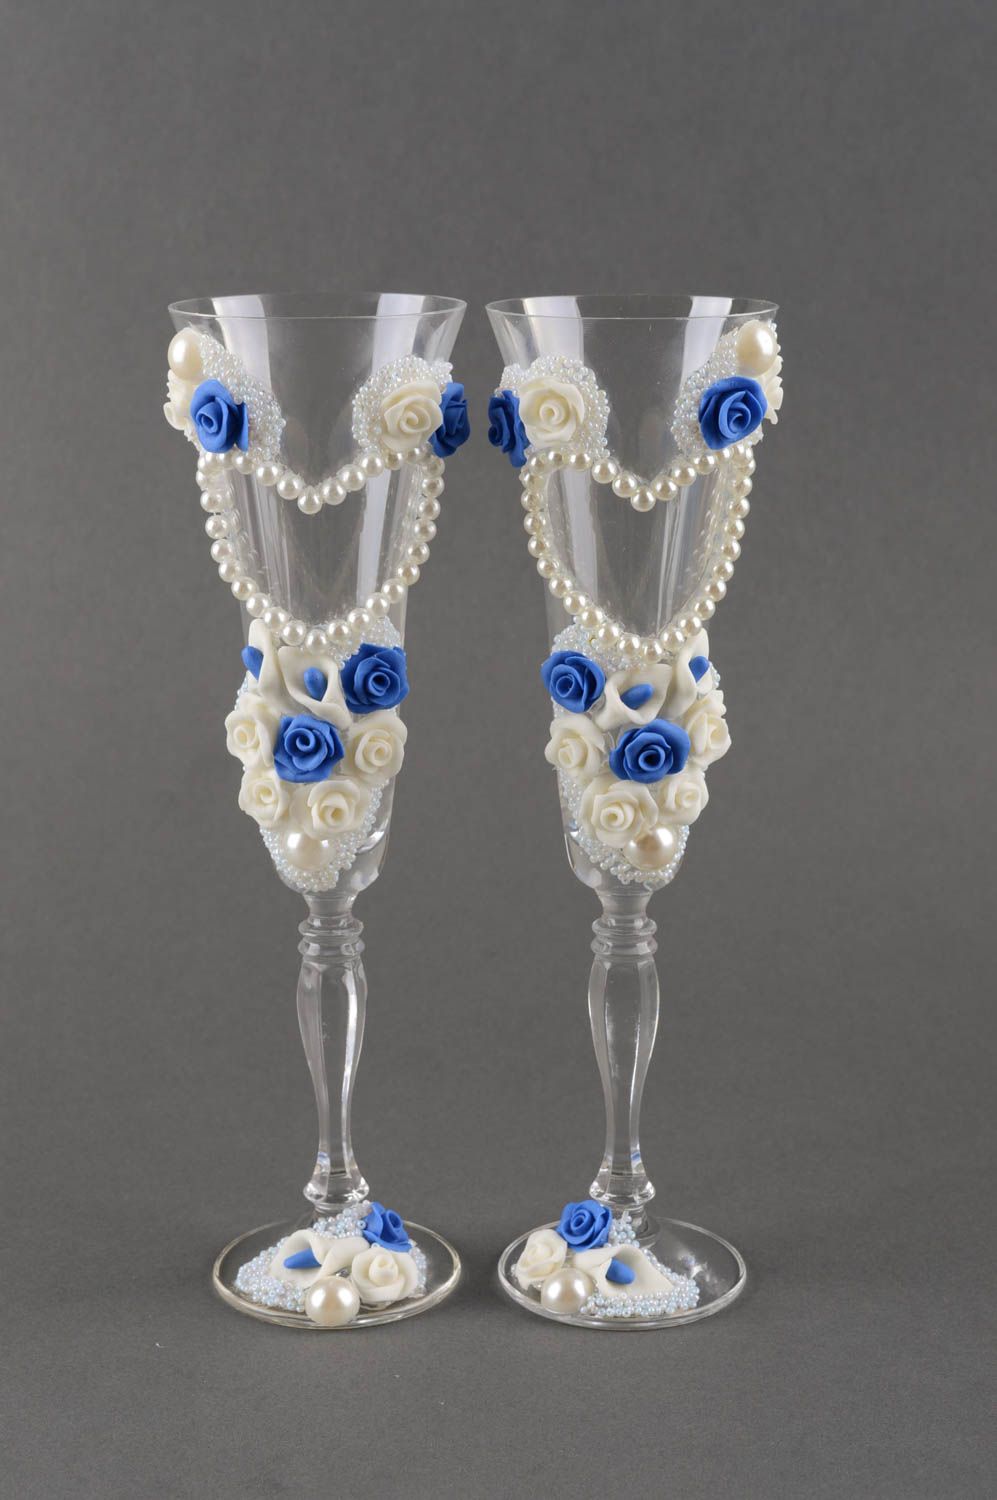 Свадебные бокалы изделия ручной работы авторские бокалы синие и белые розы фото 2